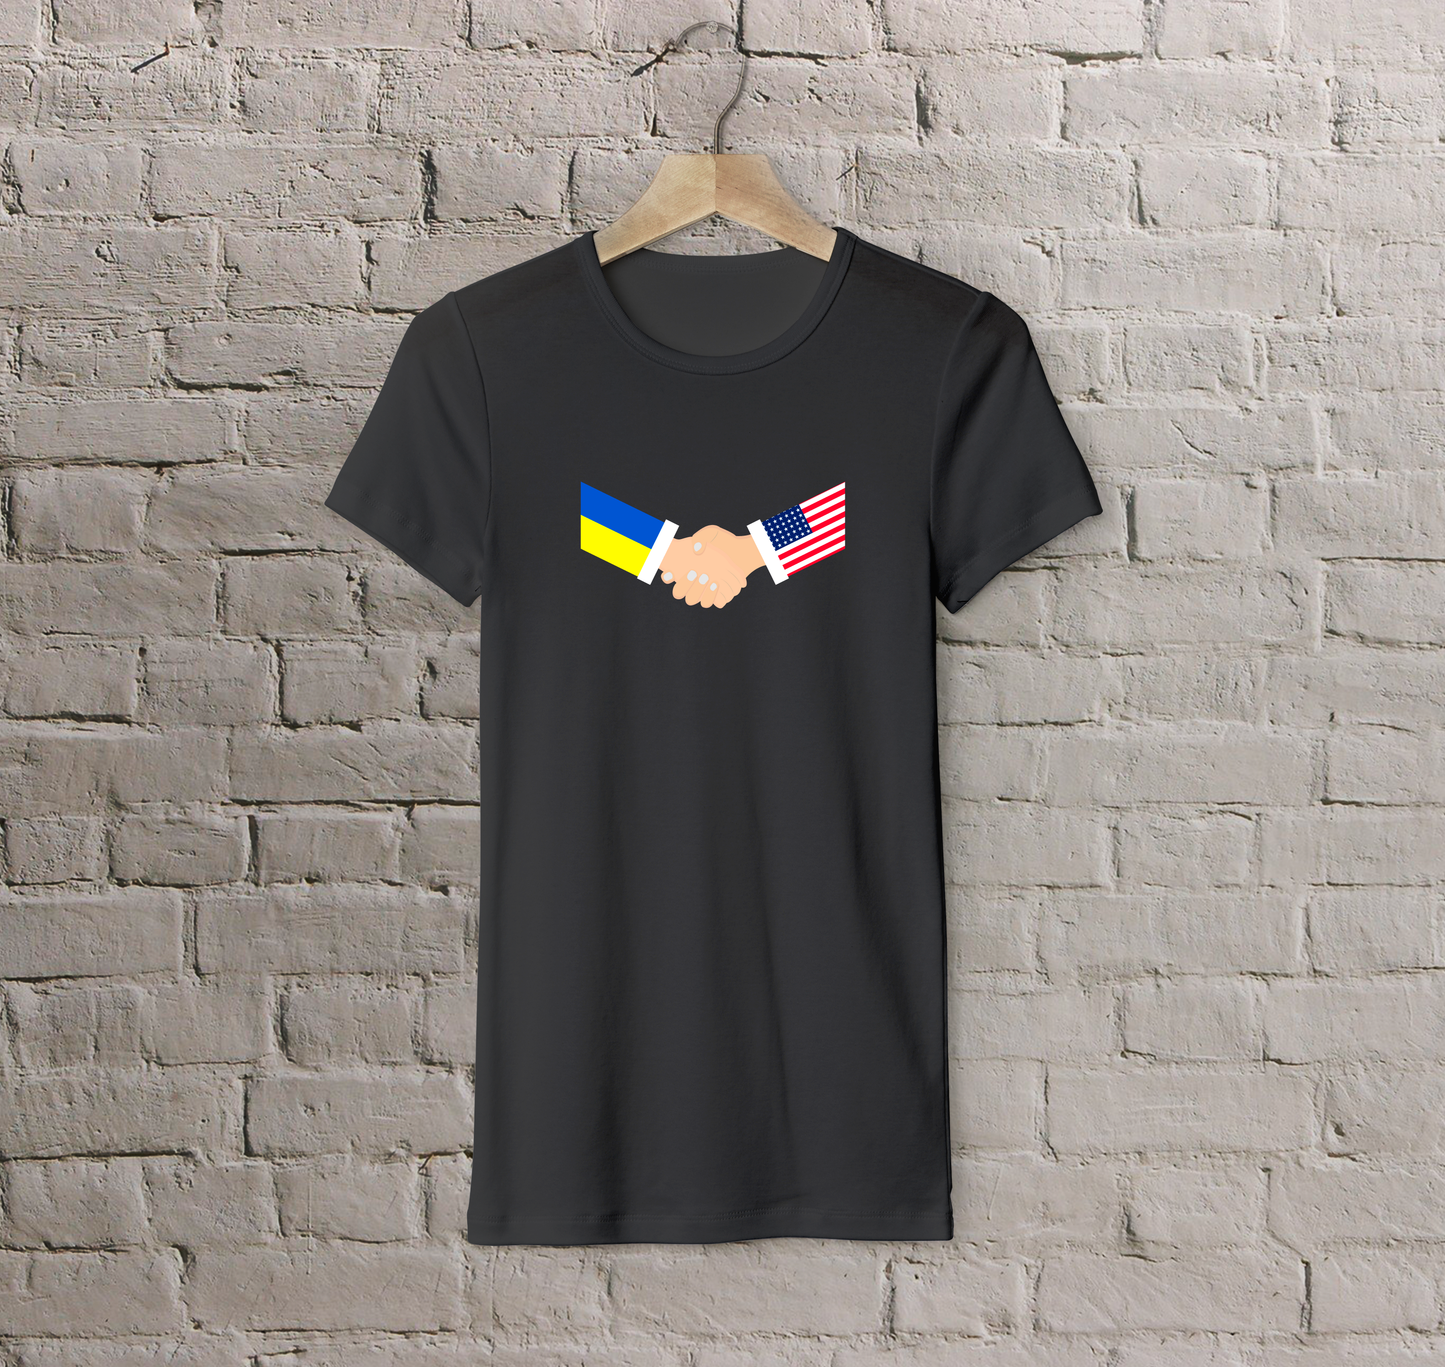 T-shirt USA + Ukraine (handshake)